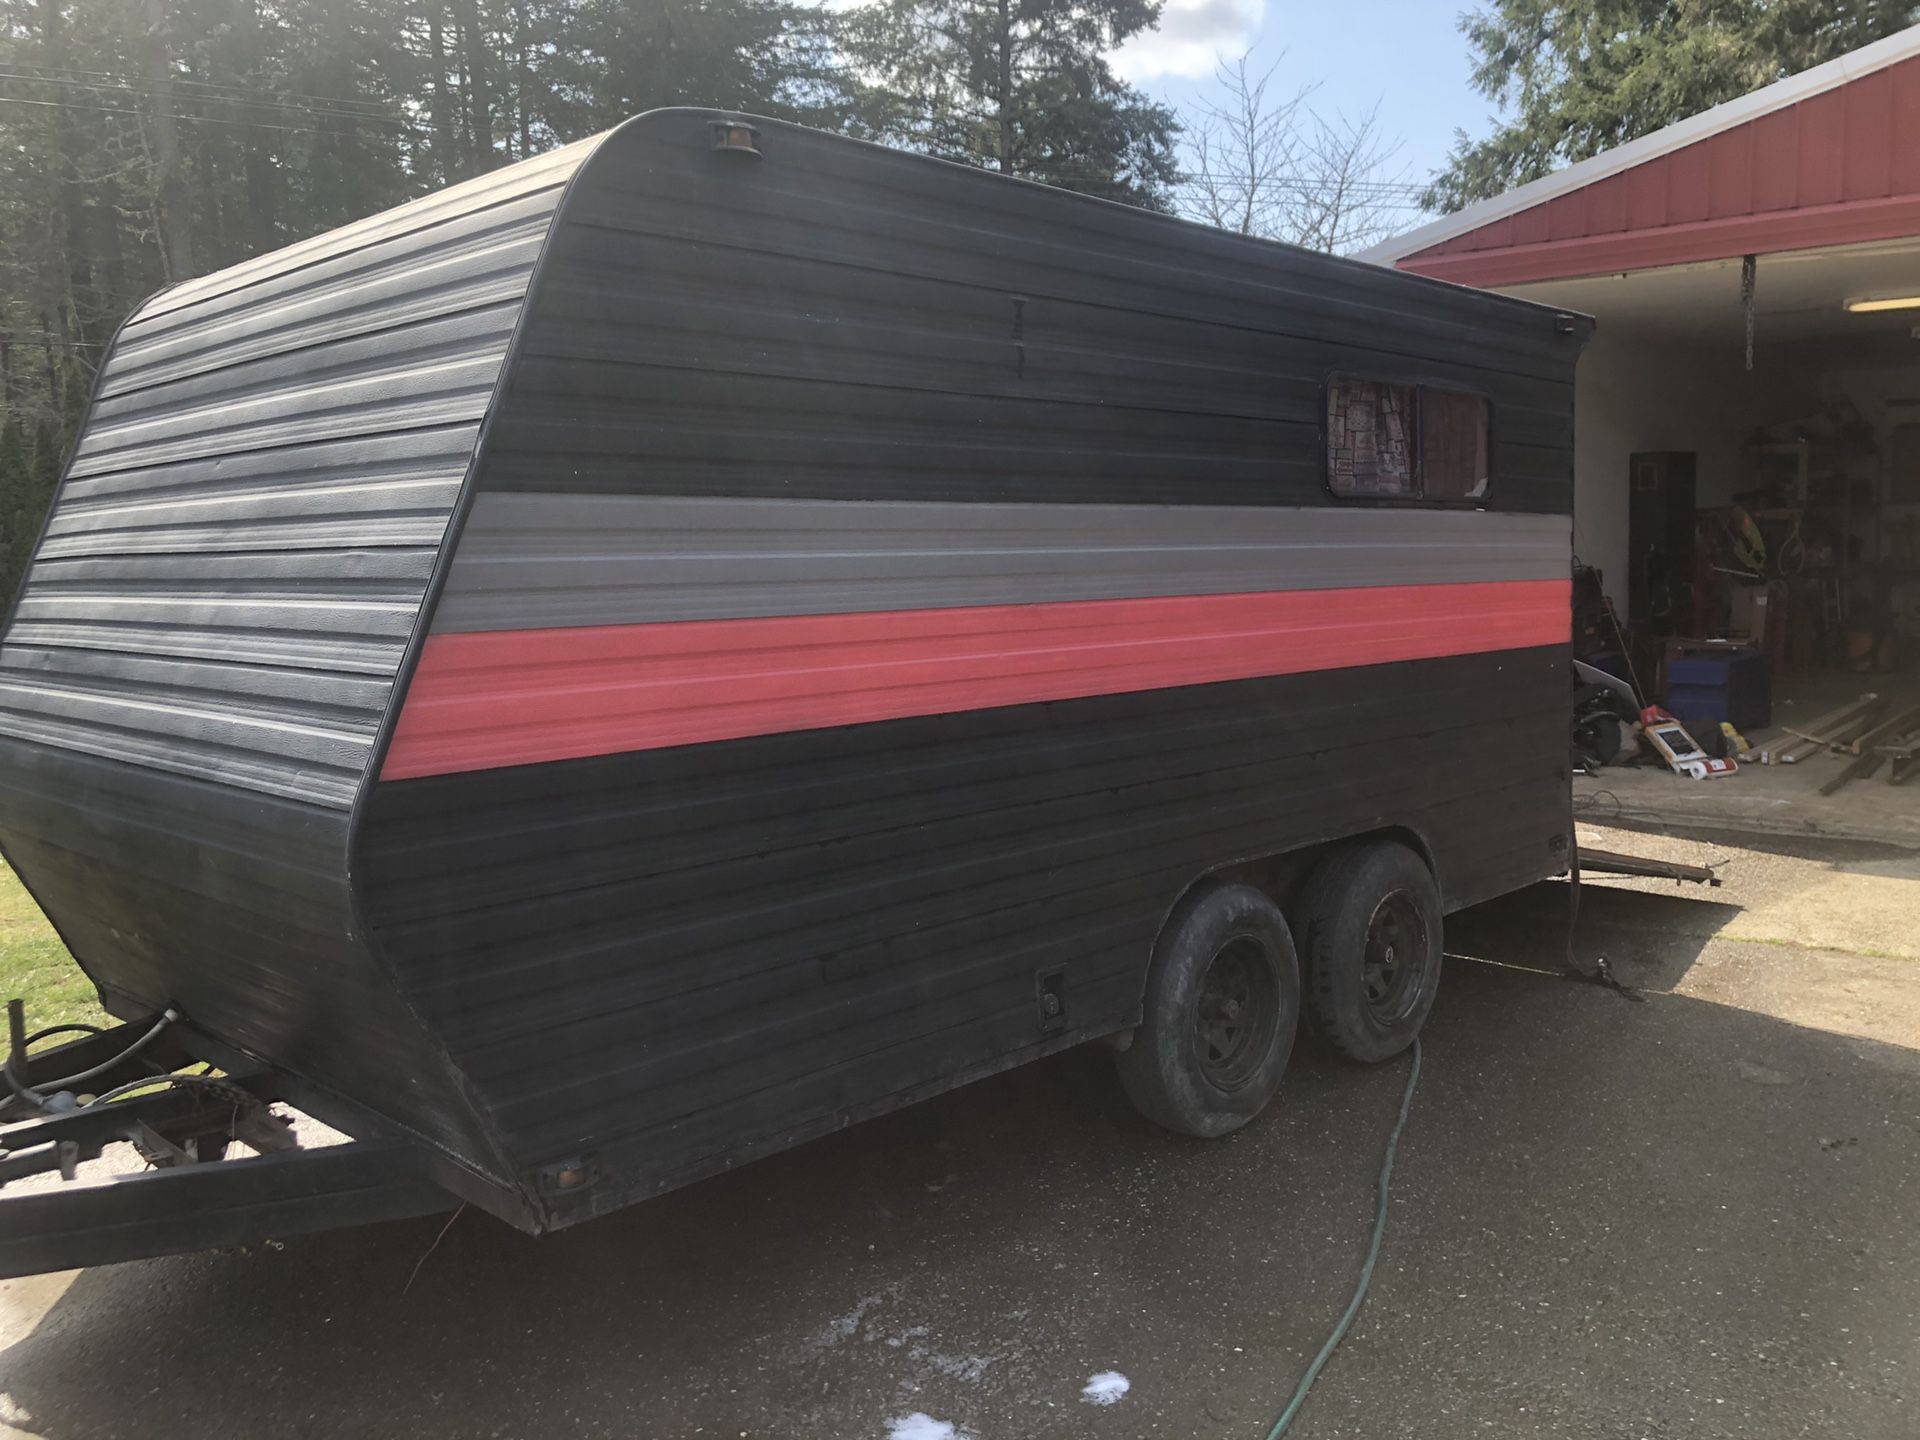 Enclosed trailer, toy hauler